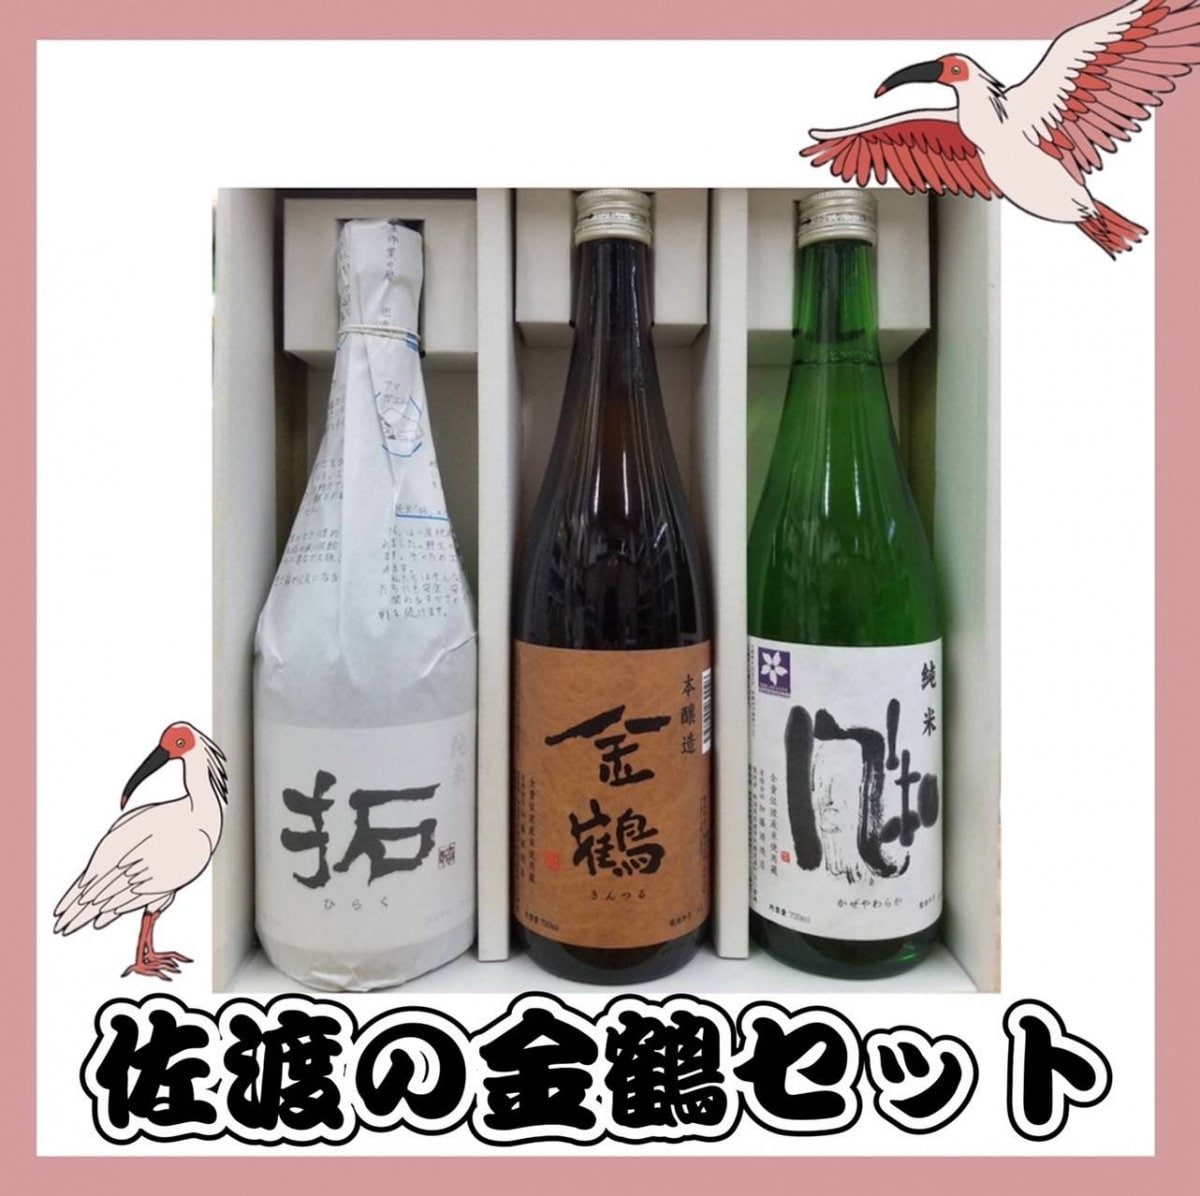 佐渡の金鶴セット/新潟県佐渡の酒蔵で造られてます